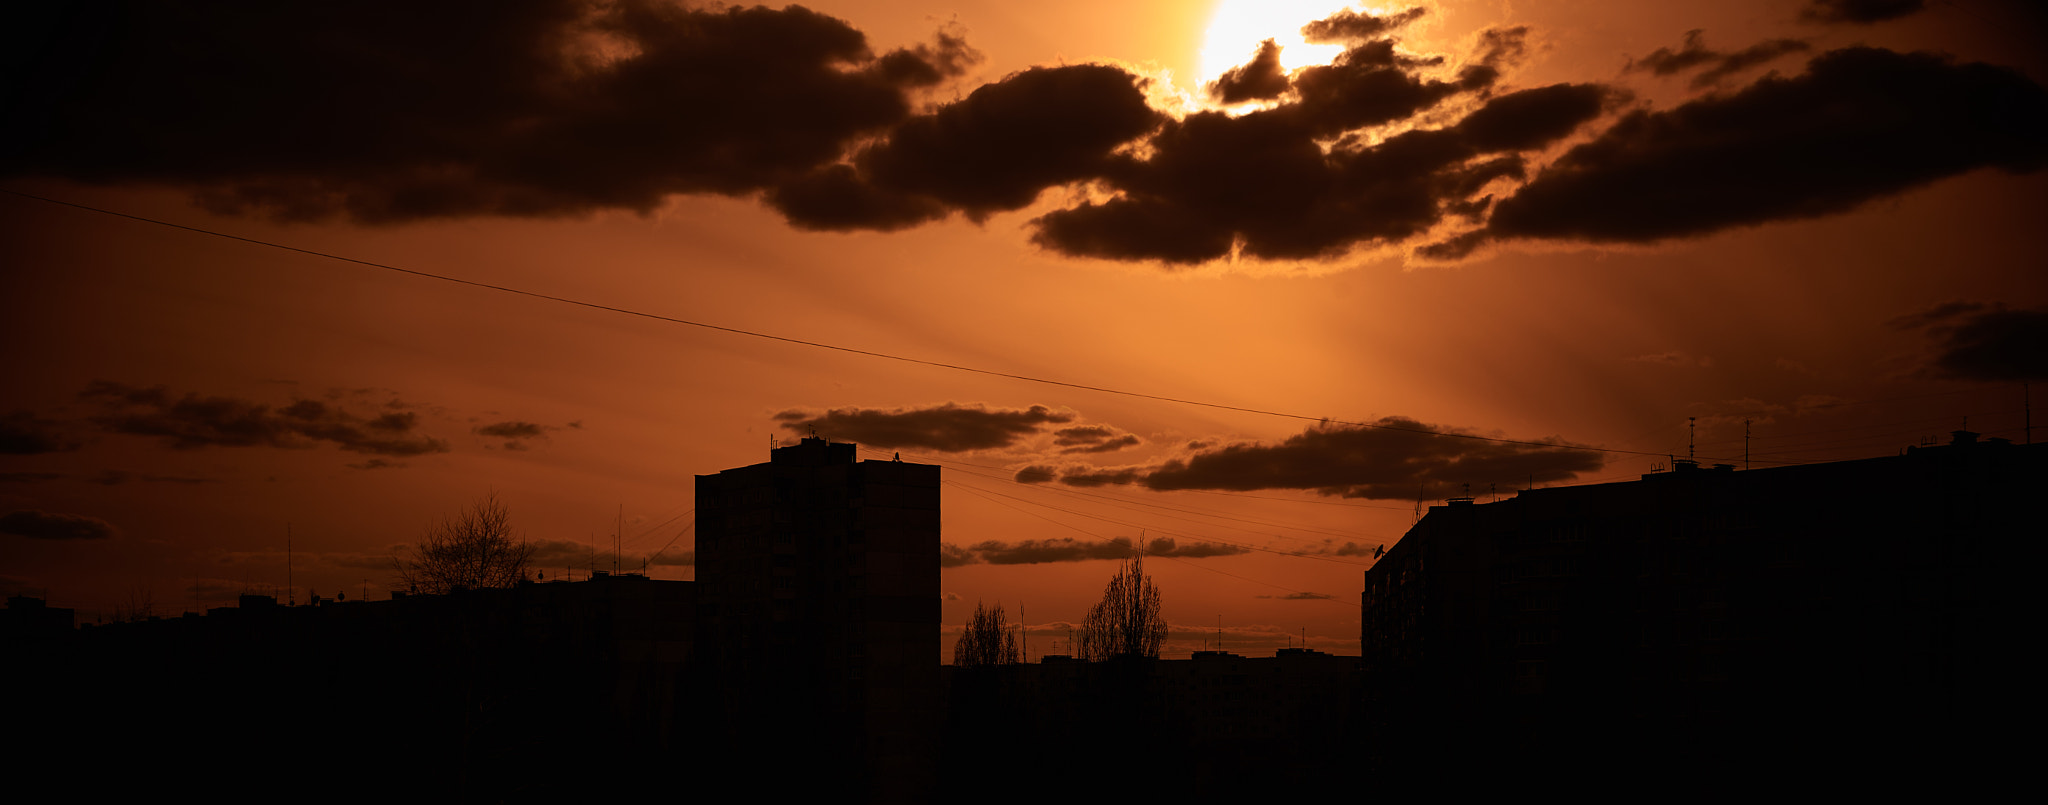 Nikon AF-S DX Nikkor 35mm F1.8G sample photo. Sunset in eastern europe photography